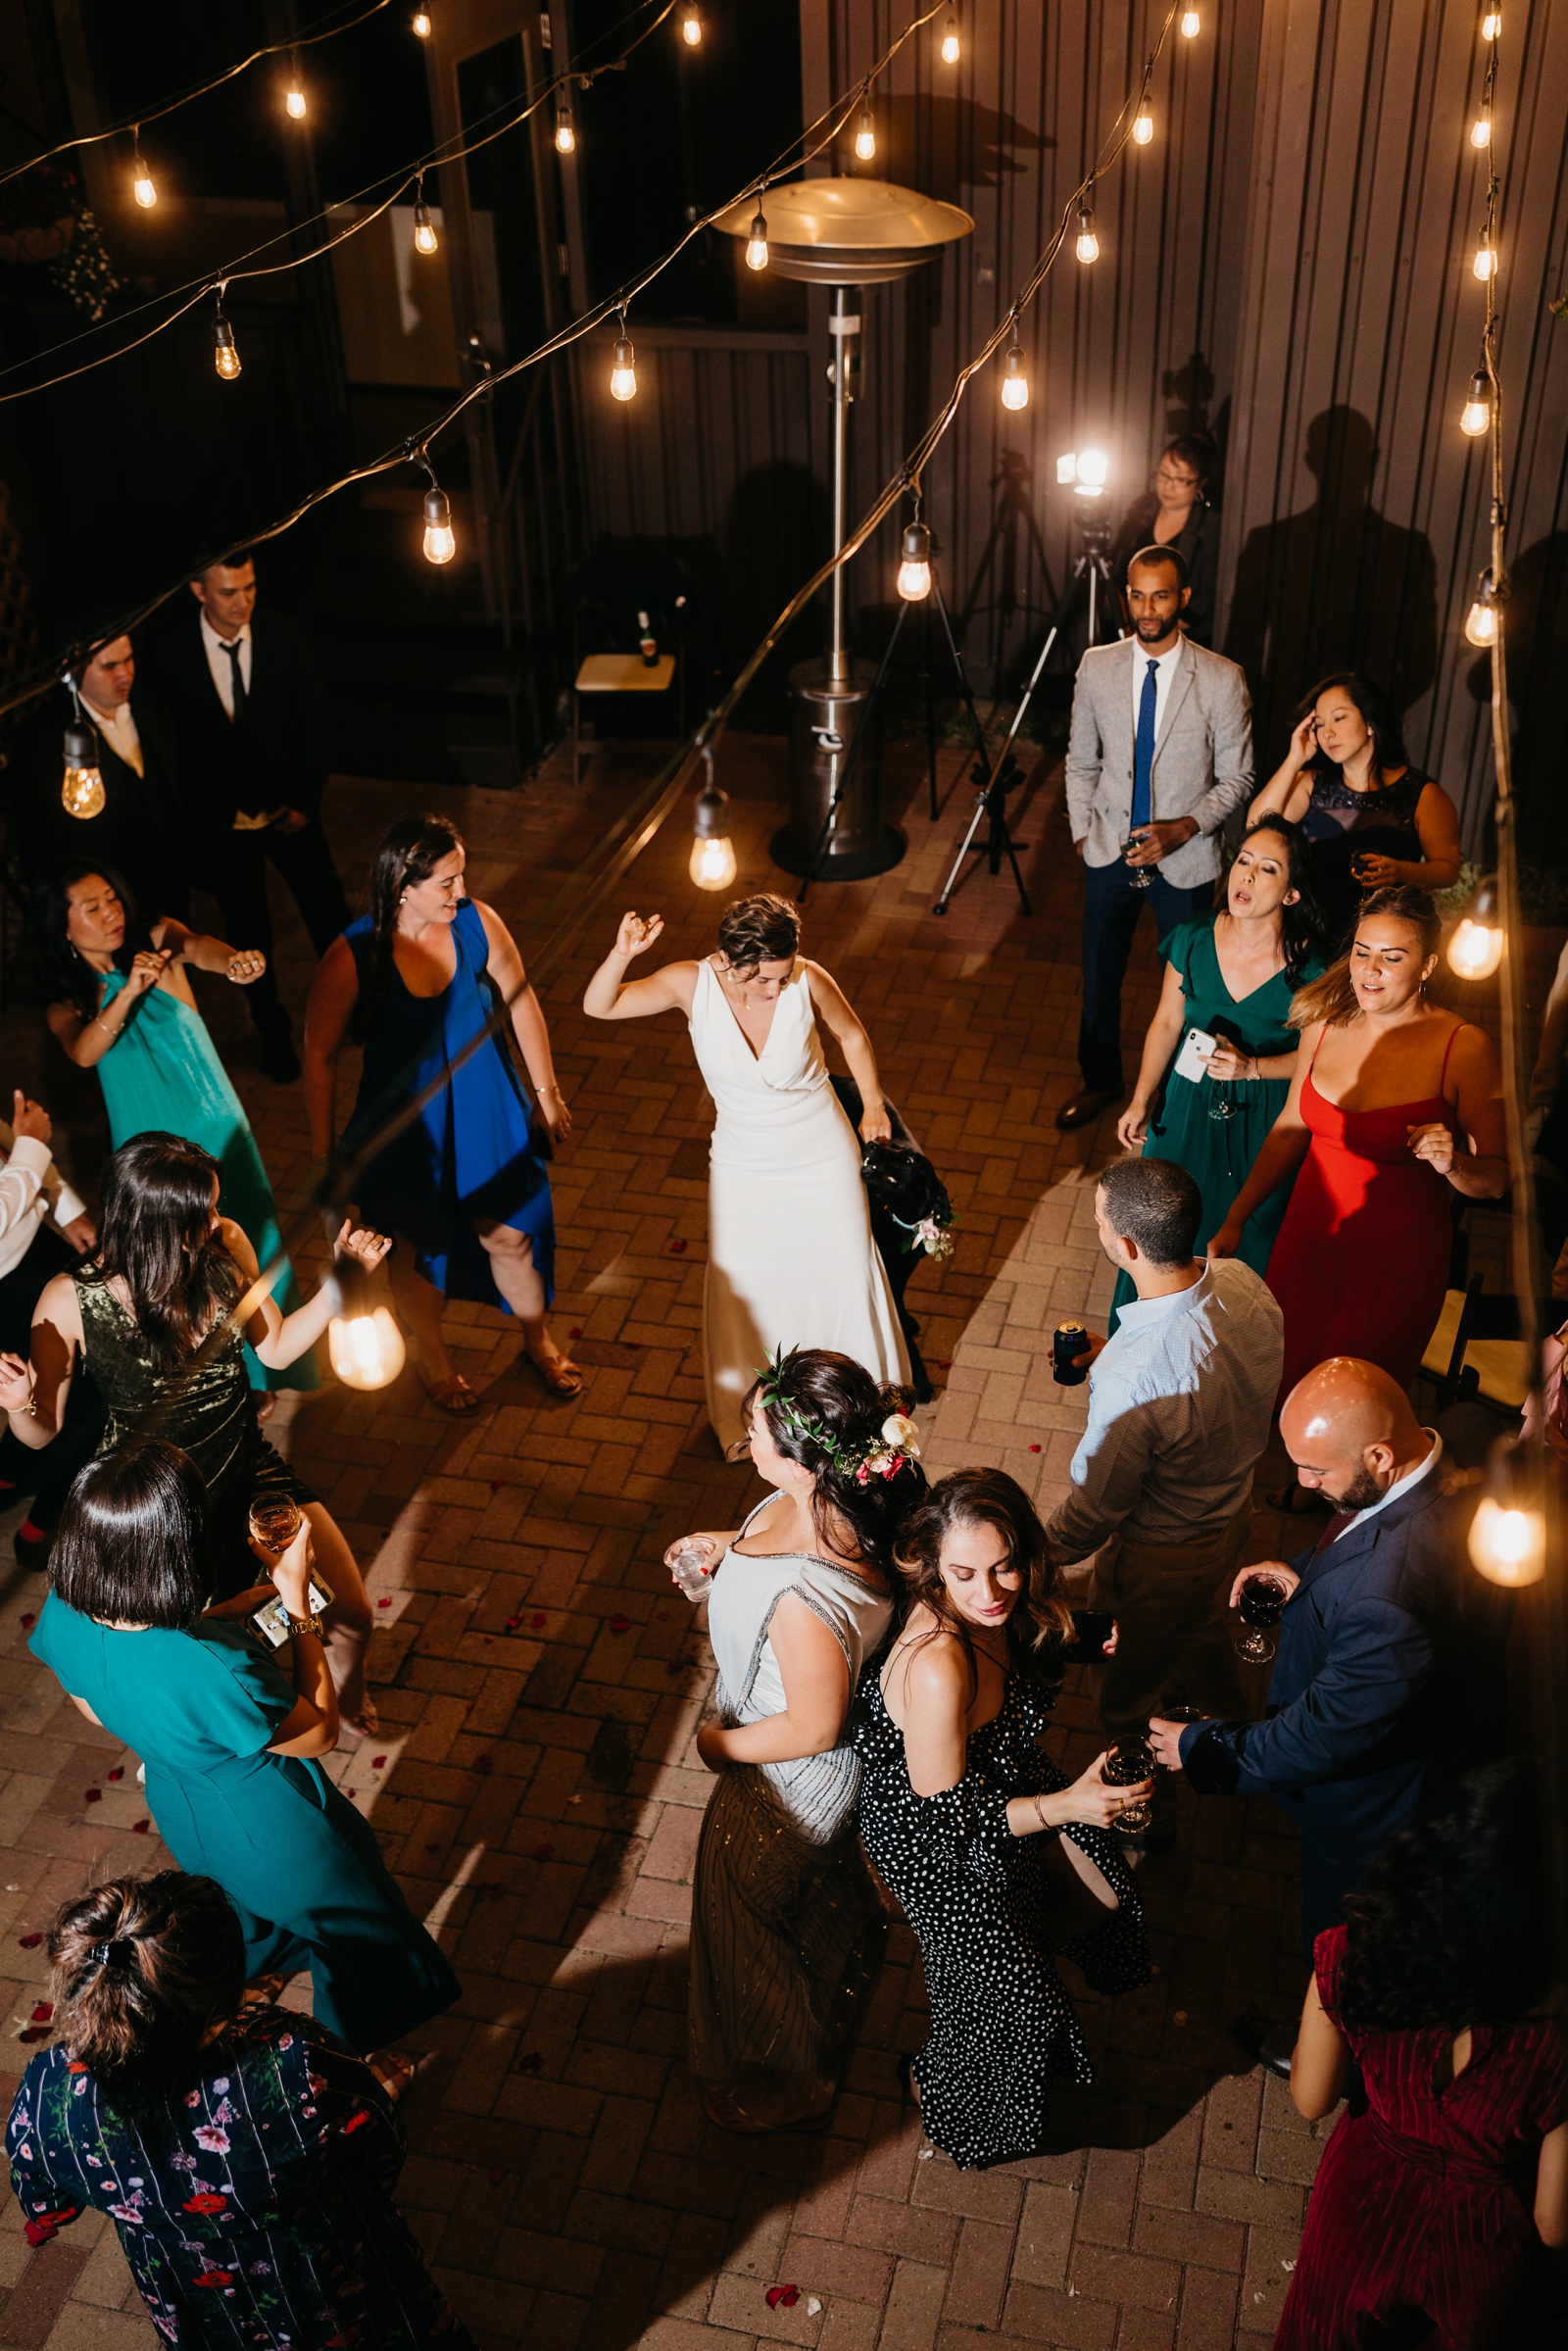 Top view of wedding guests dancing